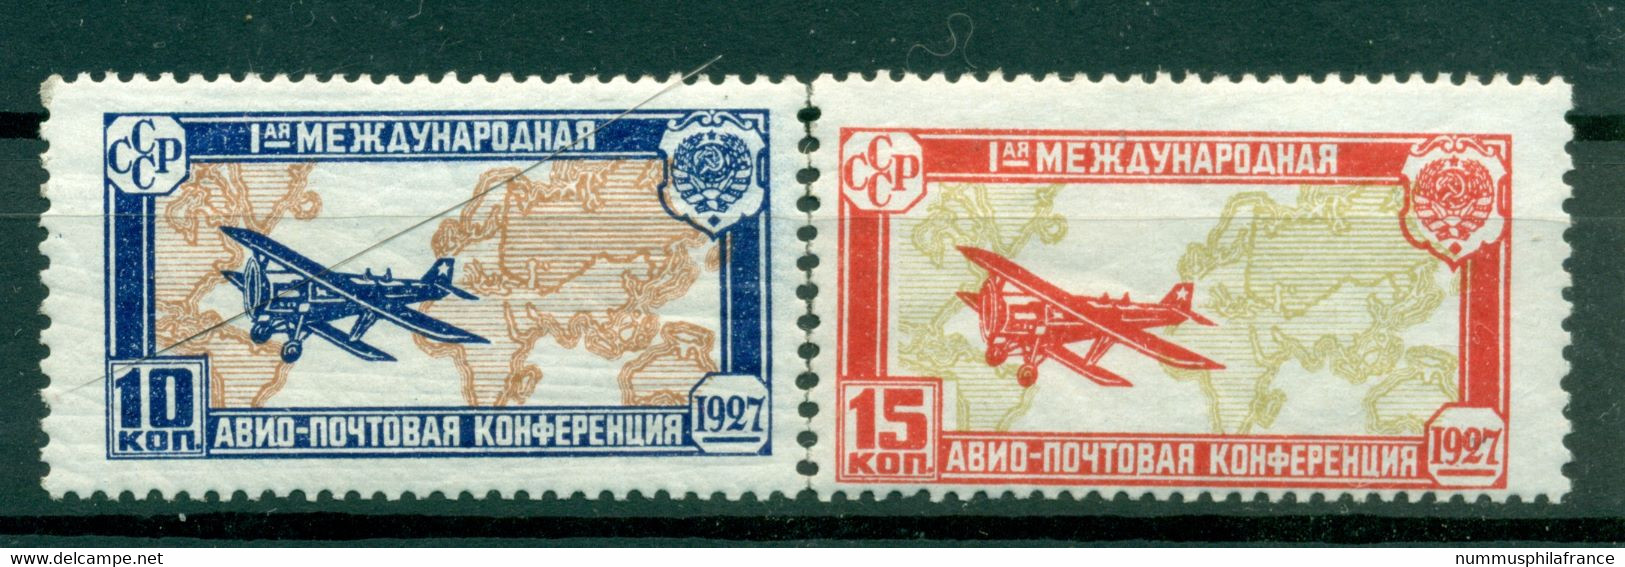 URSS 1927 - Michel N. 326/27 - Congrès De La Poste Aérienne ( Y & T N. 18/19 Poste Aérienne) - Unused Stamps